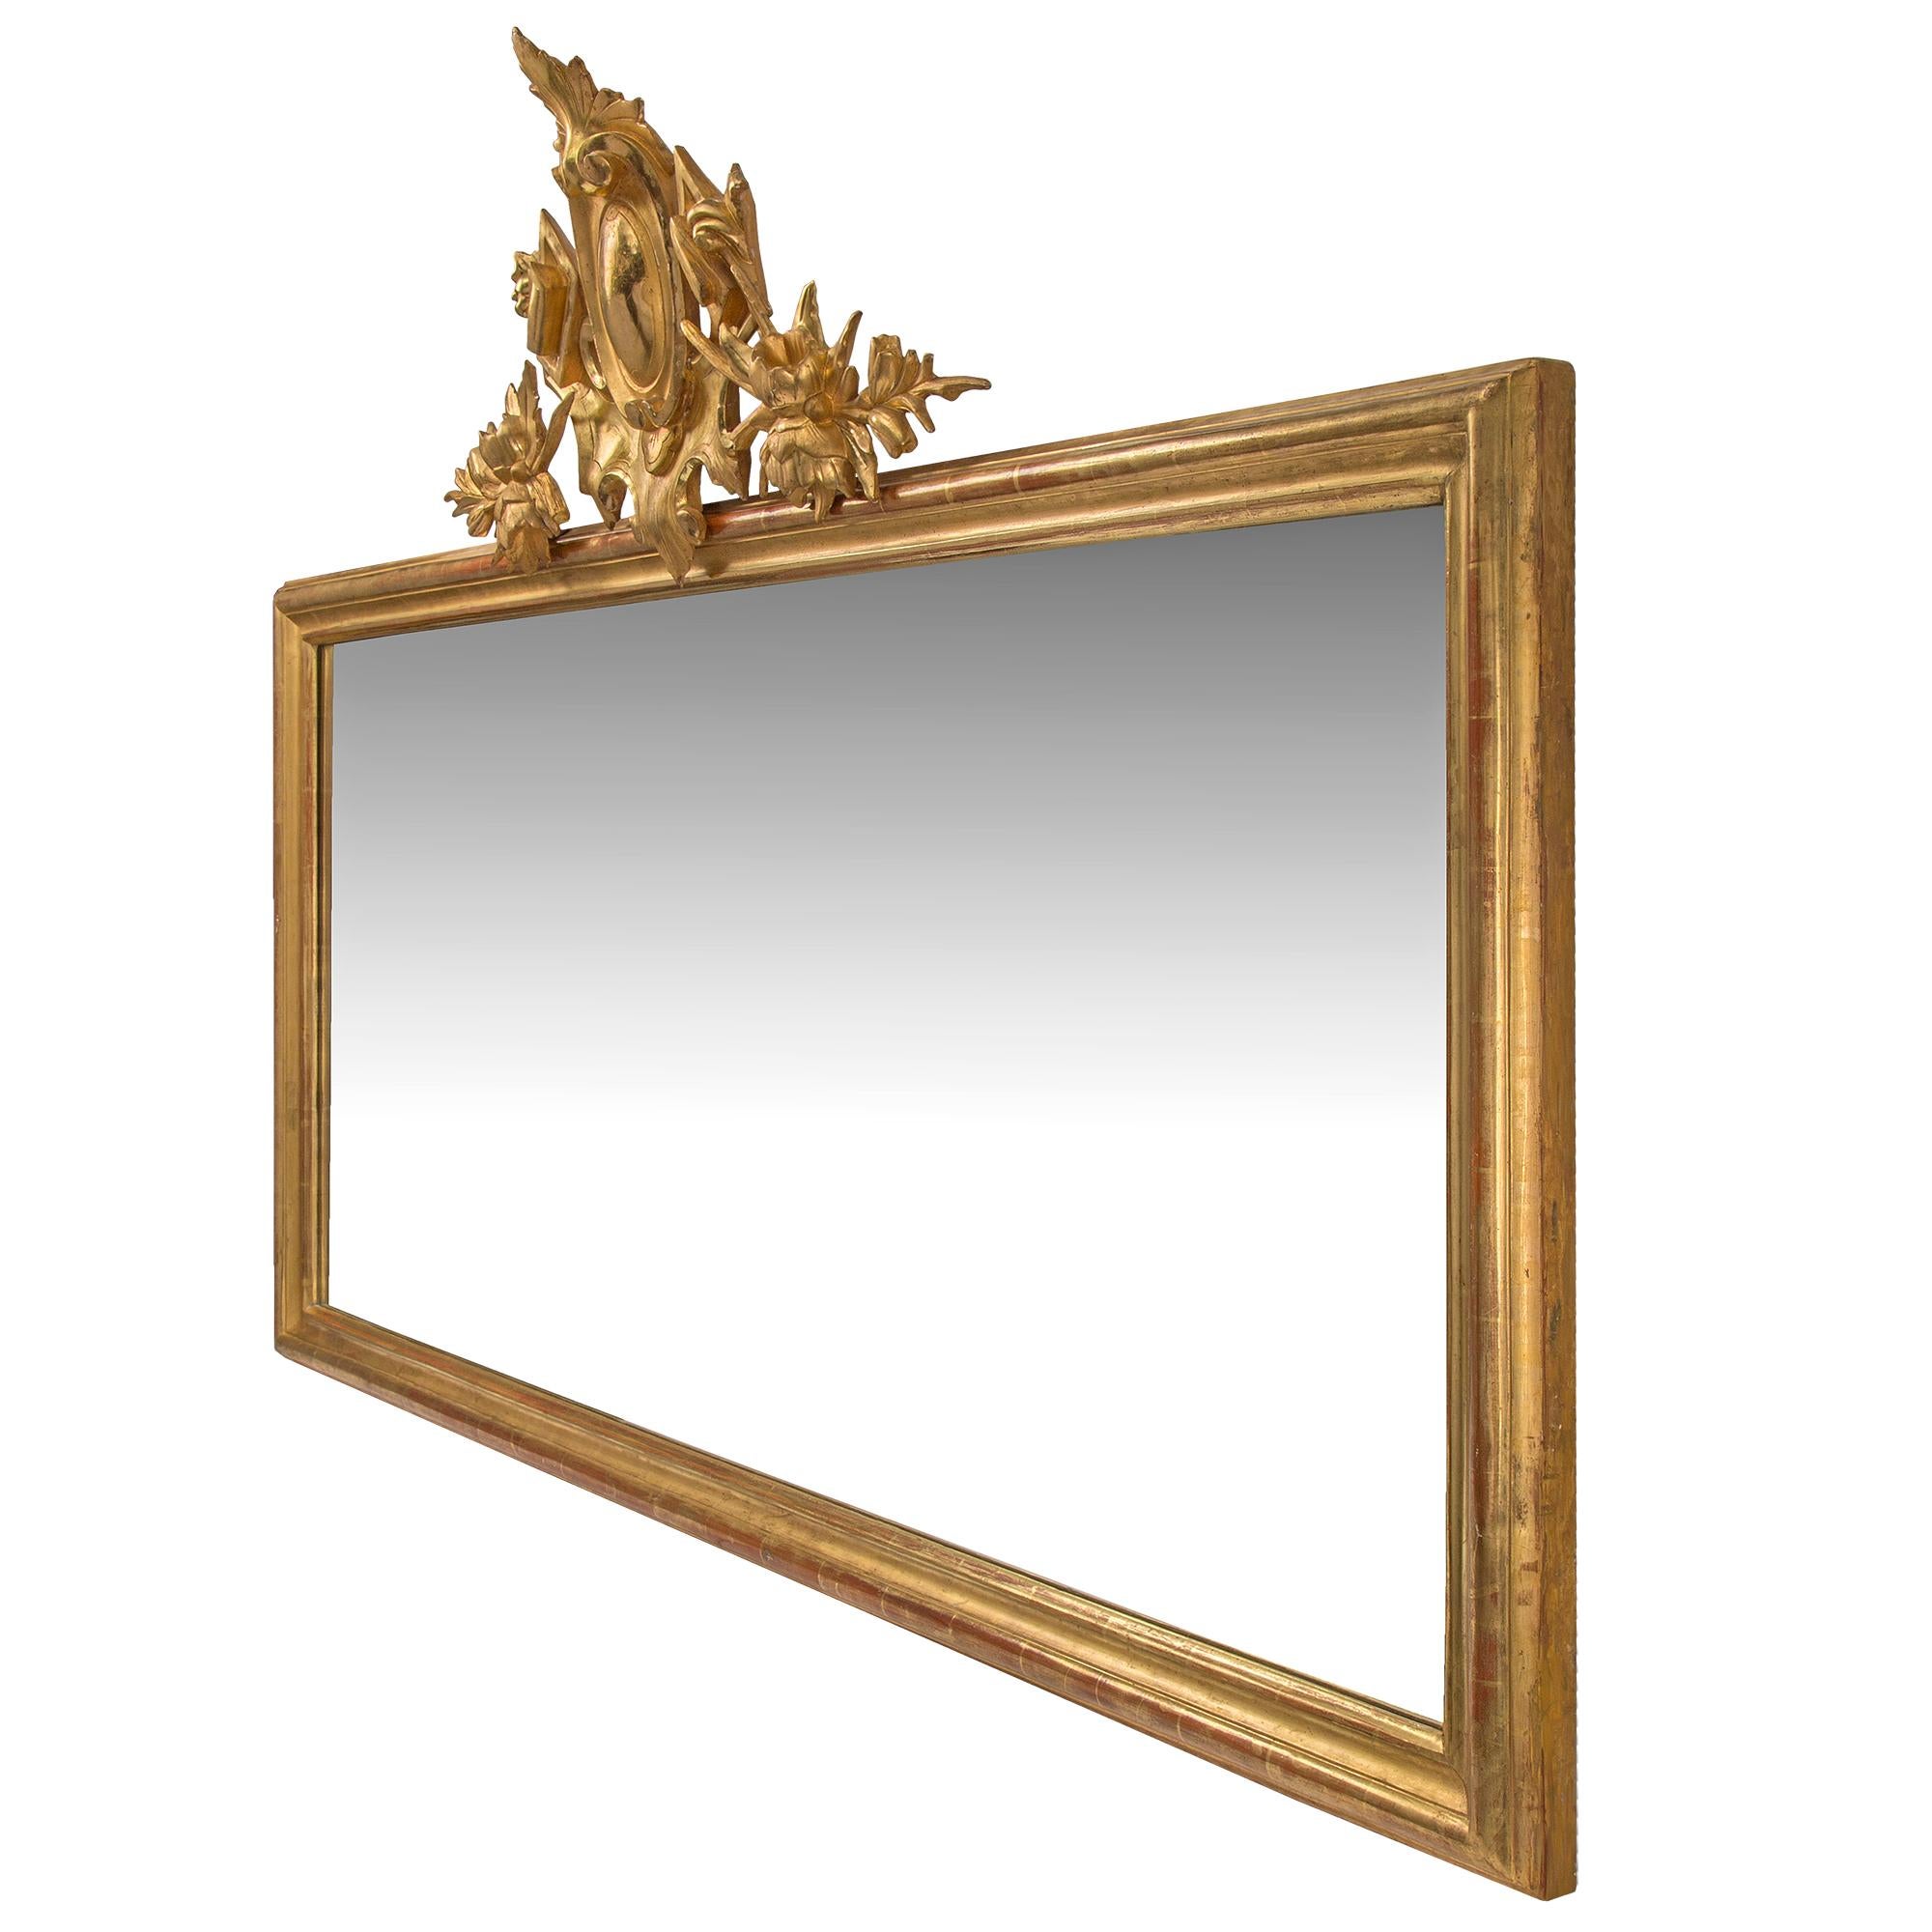 Une paire d'élégants miroirs horizontaux italiens en bois doré du XIXe siècle. Chaque miroir, avec sa dorure d'origine, est doté d'un fin cadre moulé qui borde la plaque du miroir d'origine. Le sommet de chaque pièce présente une réserve centrale